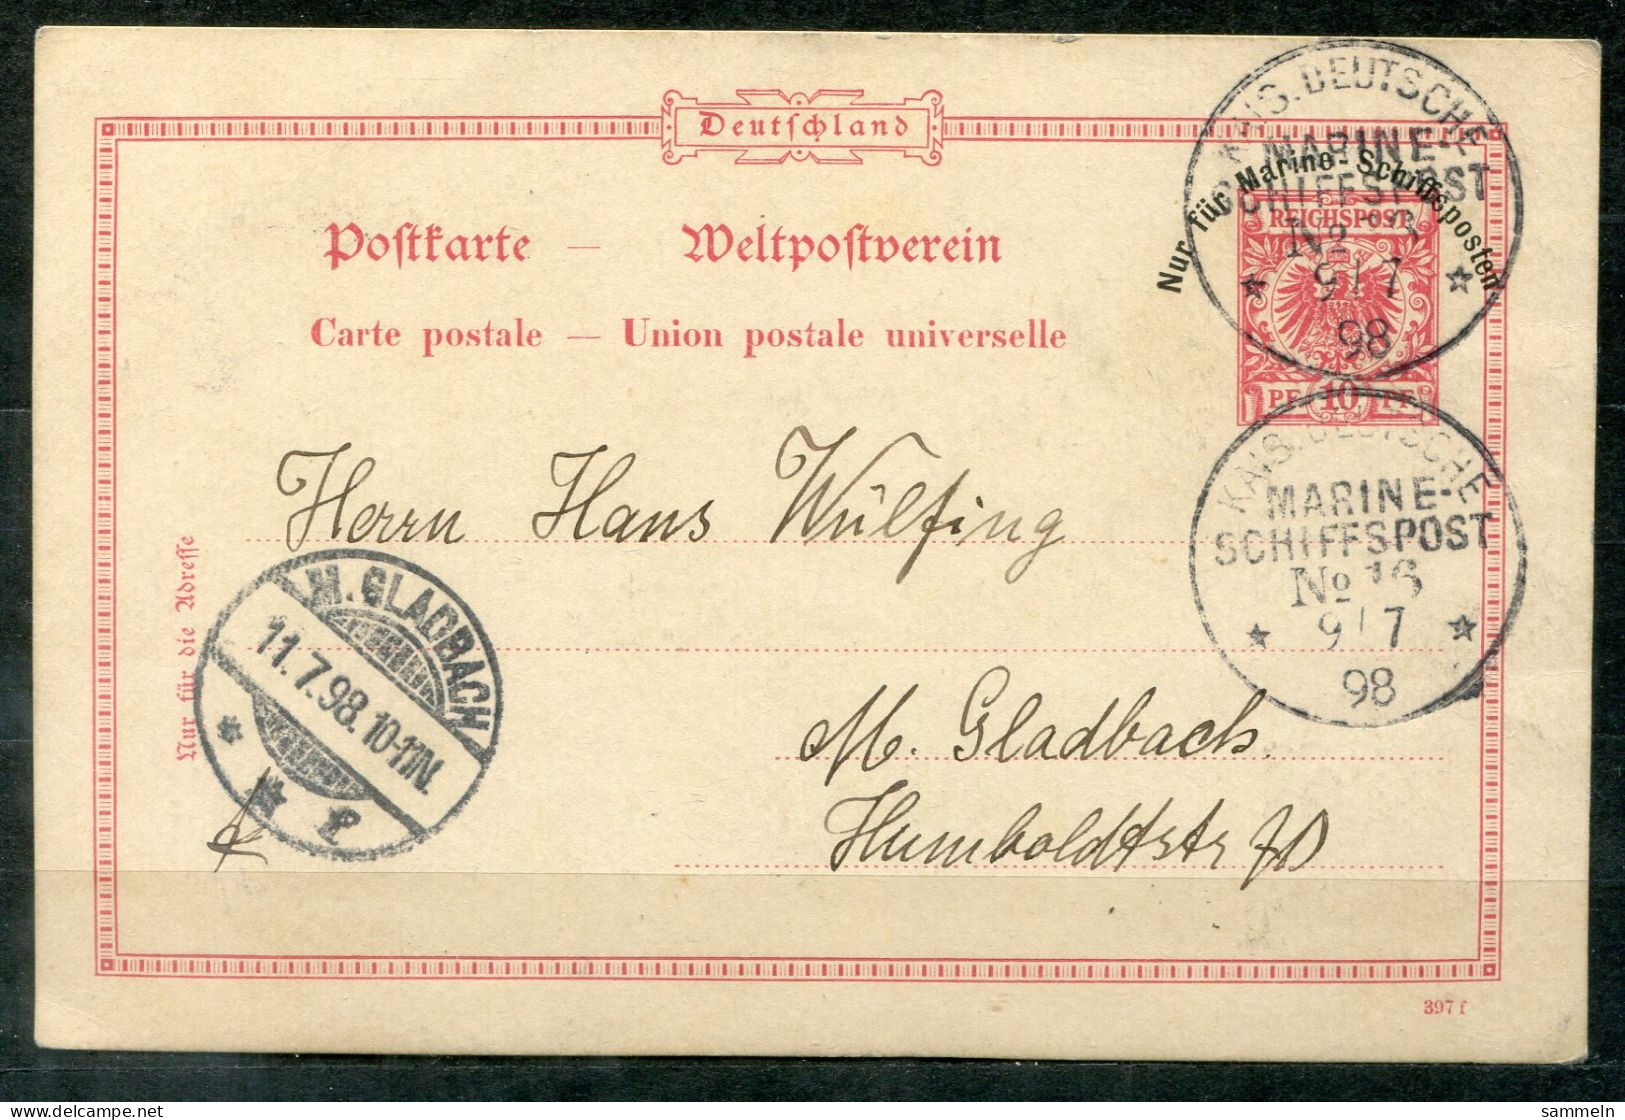 DEUTSCHES REICH - Schiffspost, Navire, Paquebot, Ship Letter, Stempel MARINE-SCHIFFSPOST No.16, 9.7.98 - Postkarten